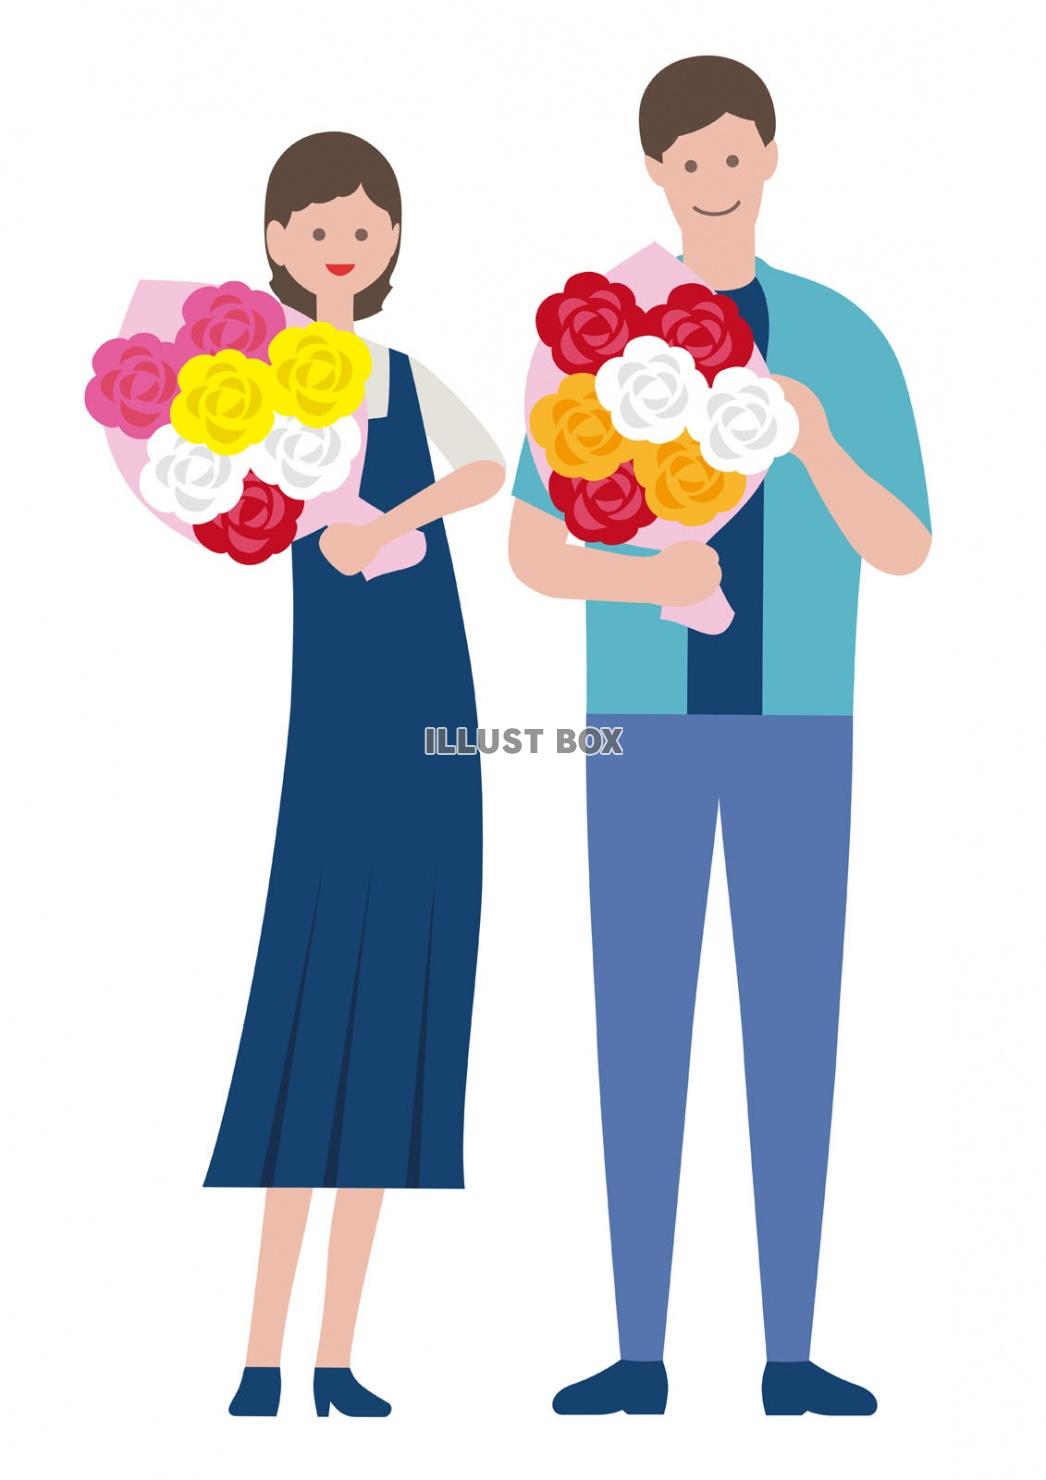 無料イラスト 花束を持つ人のイラストセット